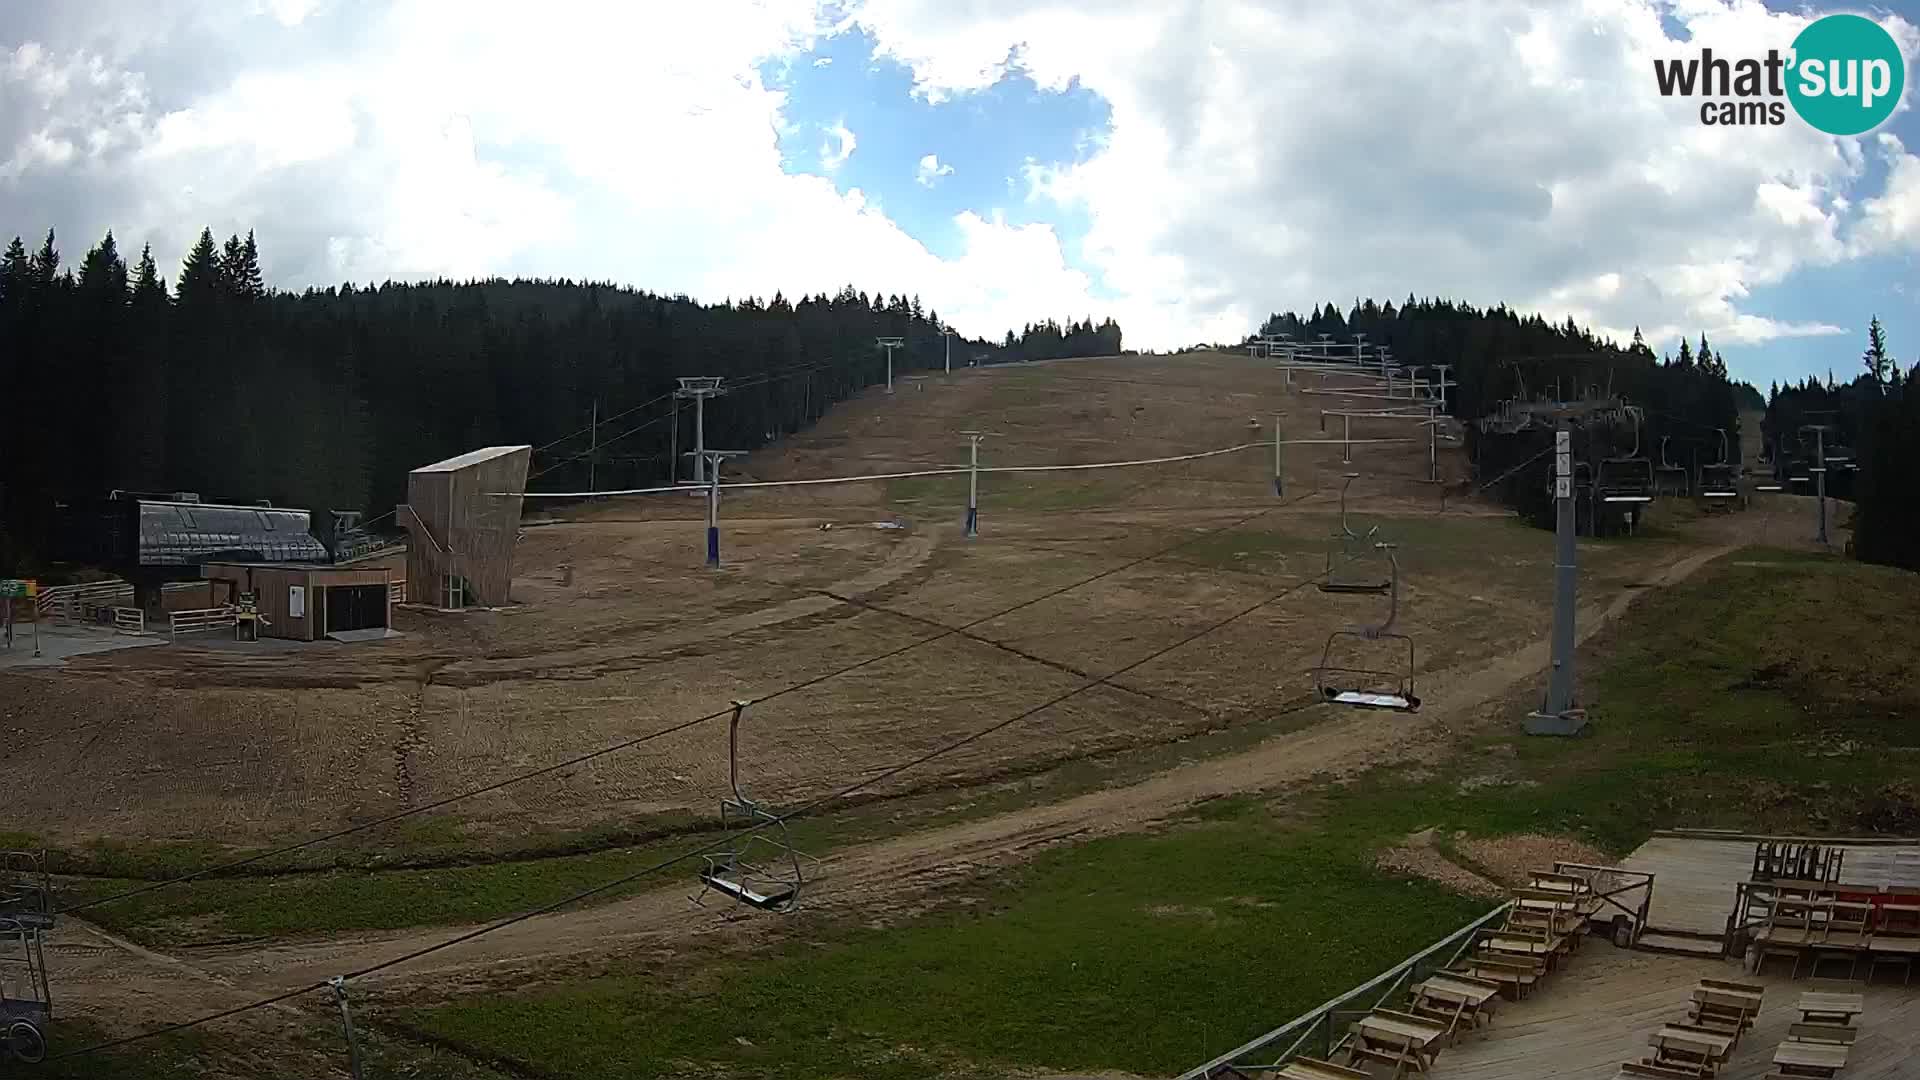 Rogla ski resort – MšinŽaga – Funpark